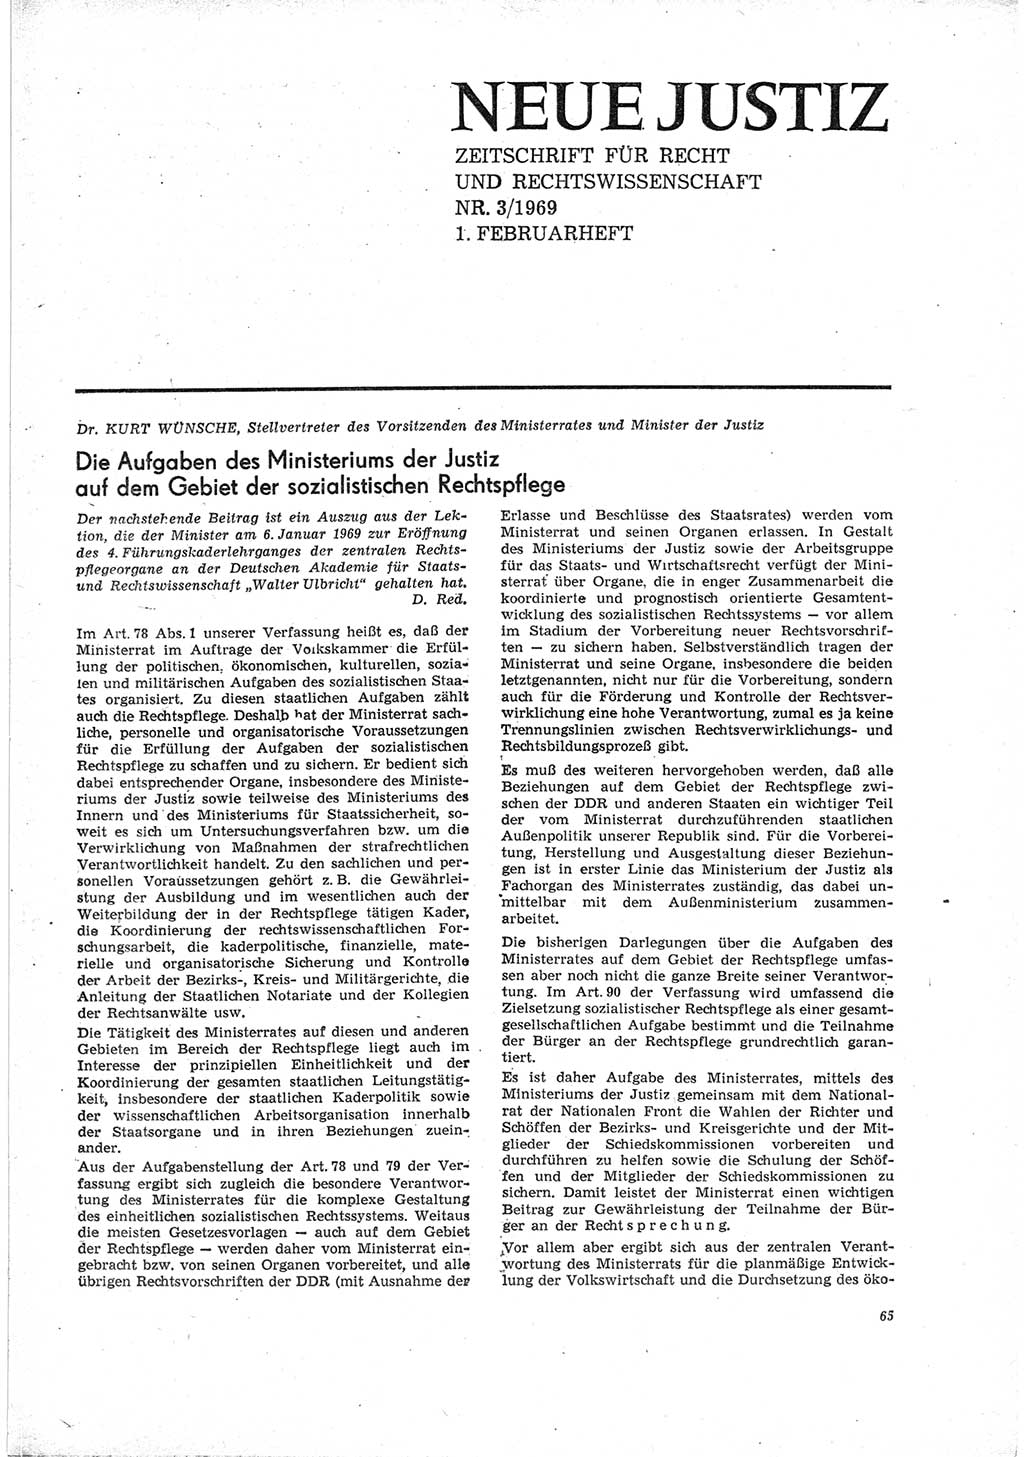 Neue Justiz (NJ), Zeitschrift für Recht und Rechtswissenschaft [Deutsche Demokratische Republik (DDR)], 23. Jahrgang 1969, Seite 65 (NJ DDR 1969, S. 65)